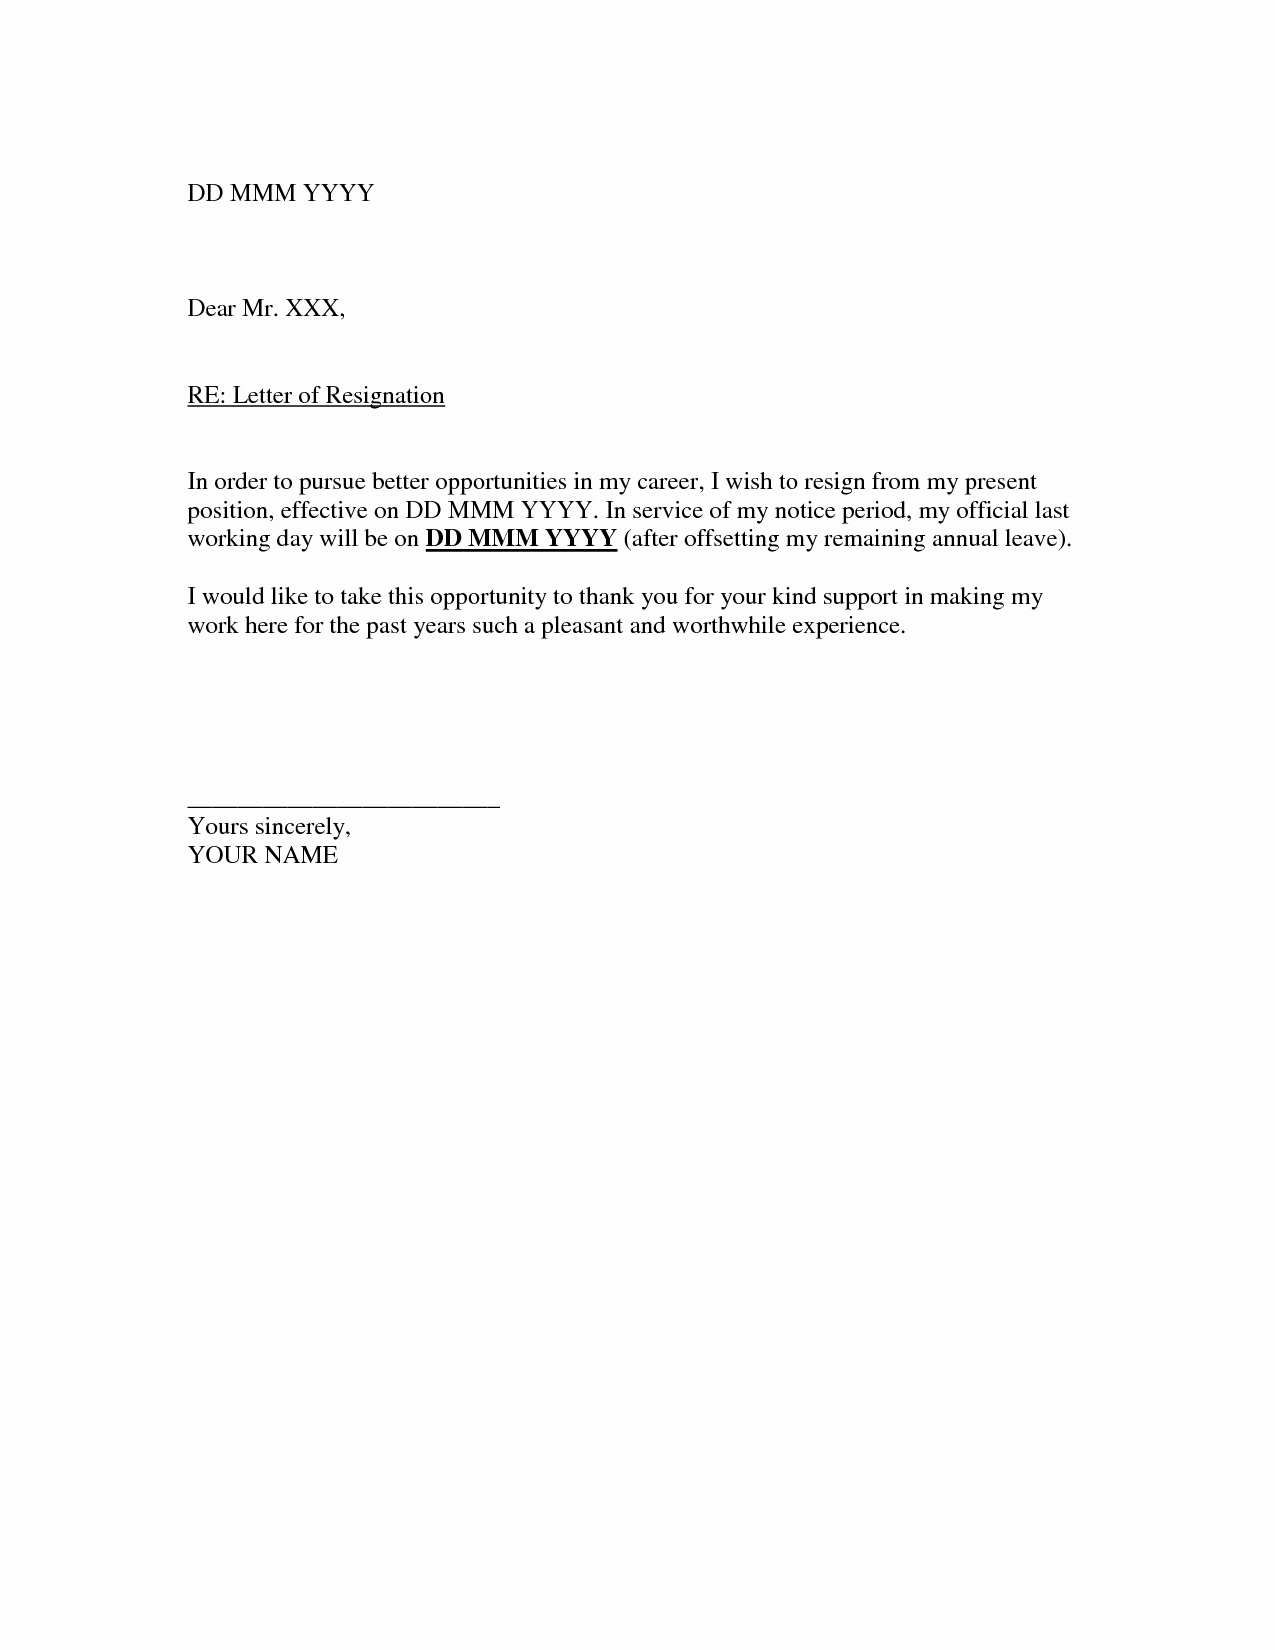 Letter Of Resignation Outline Inspirational Resignation Letter Template